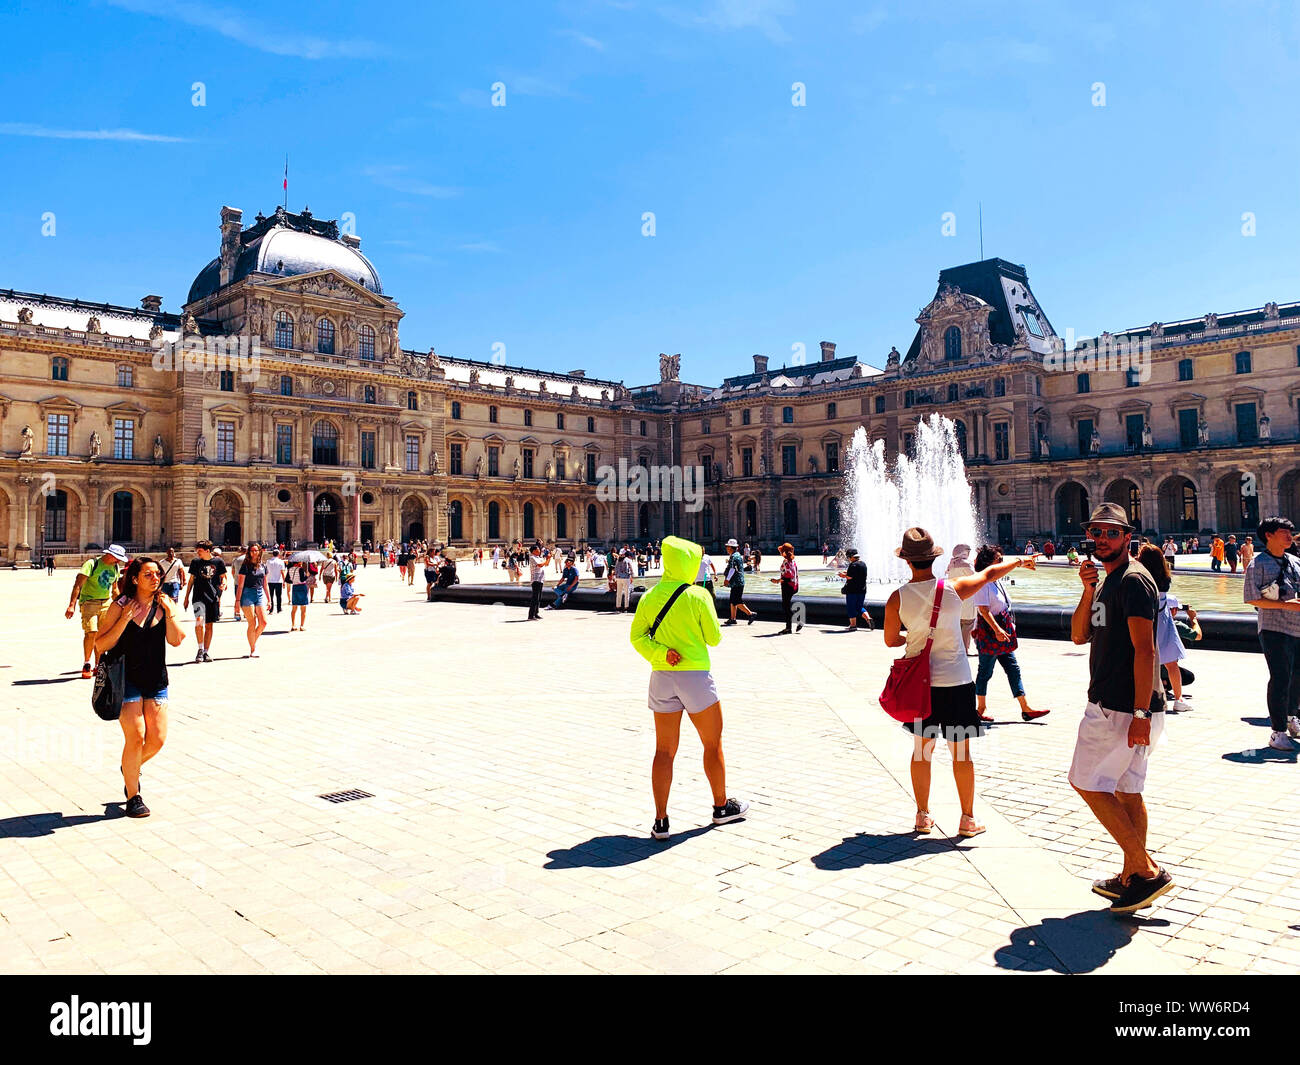 Paris / France - Juillet 6, 2019 : place principale de célèbre musée du Louvre. De nombreux touristes marchant autour. Jour d'été ensoleillé. Banque D'Images